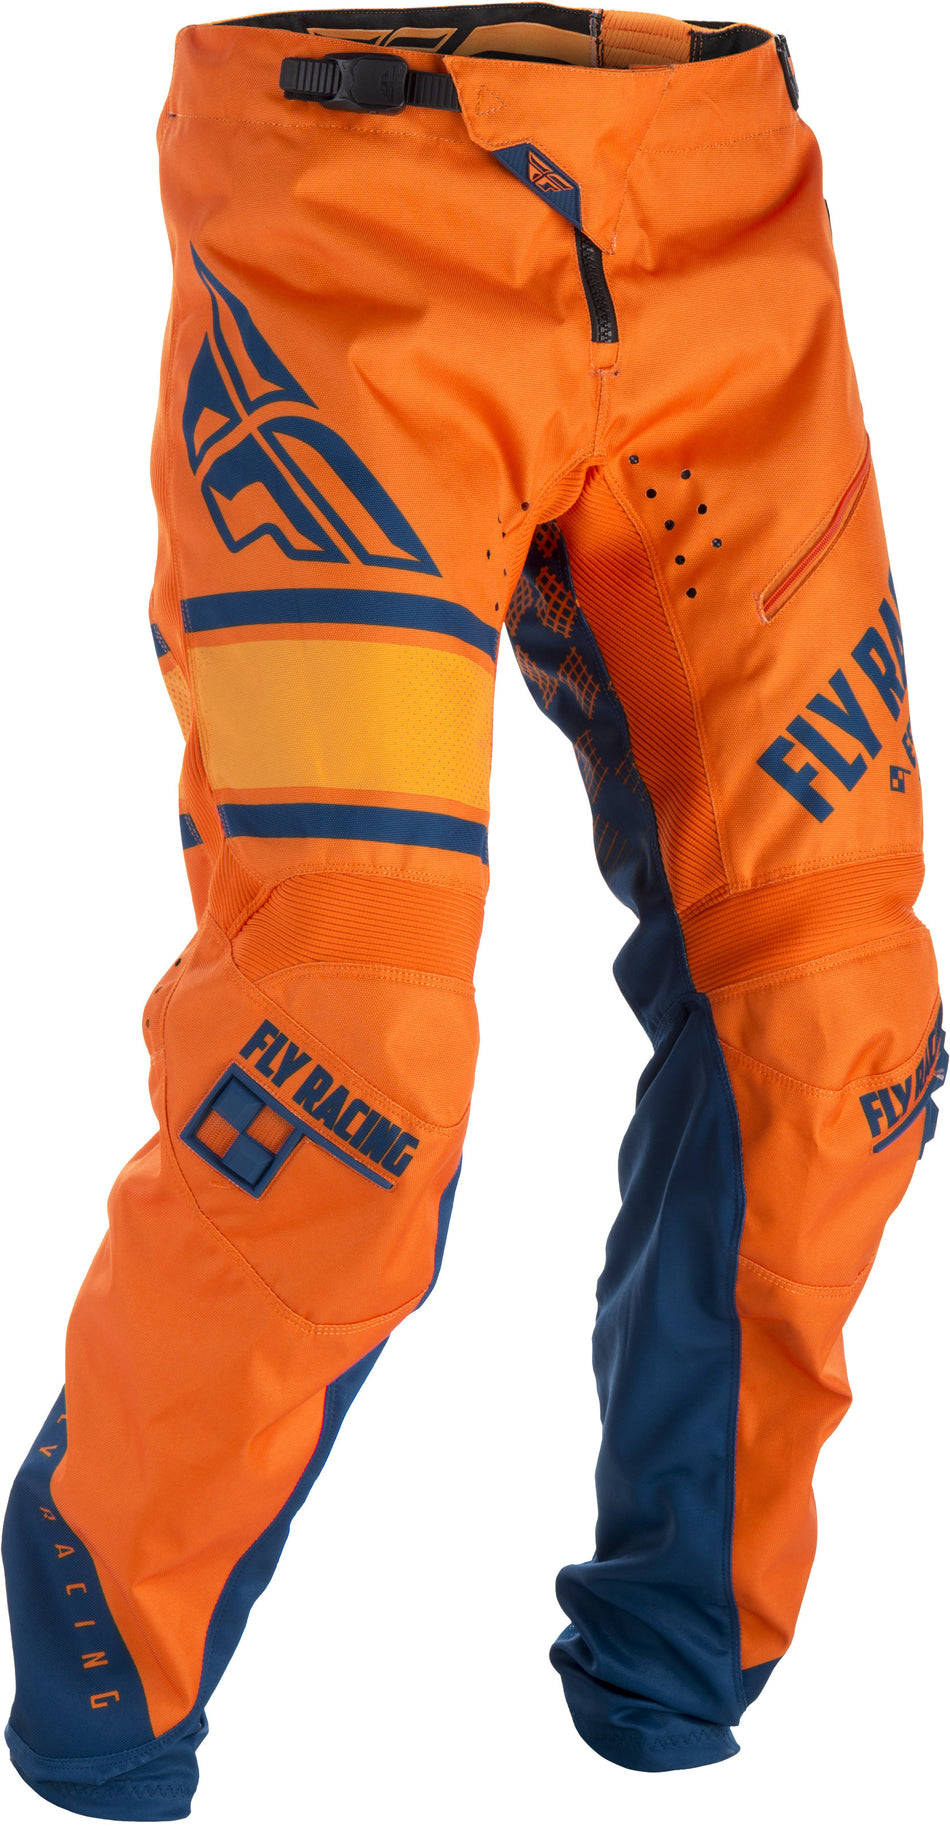 FLY RACING Kinetic Era Bicycle Pants Orange/Navy Sz 20 371-02820